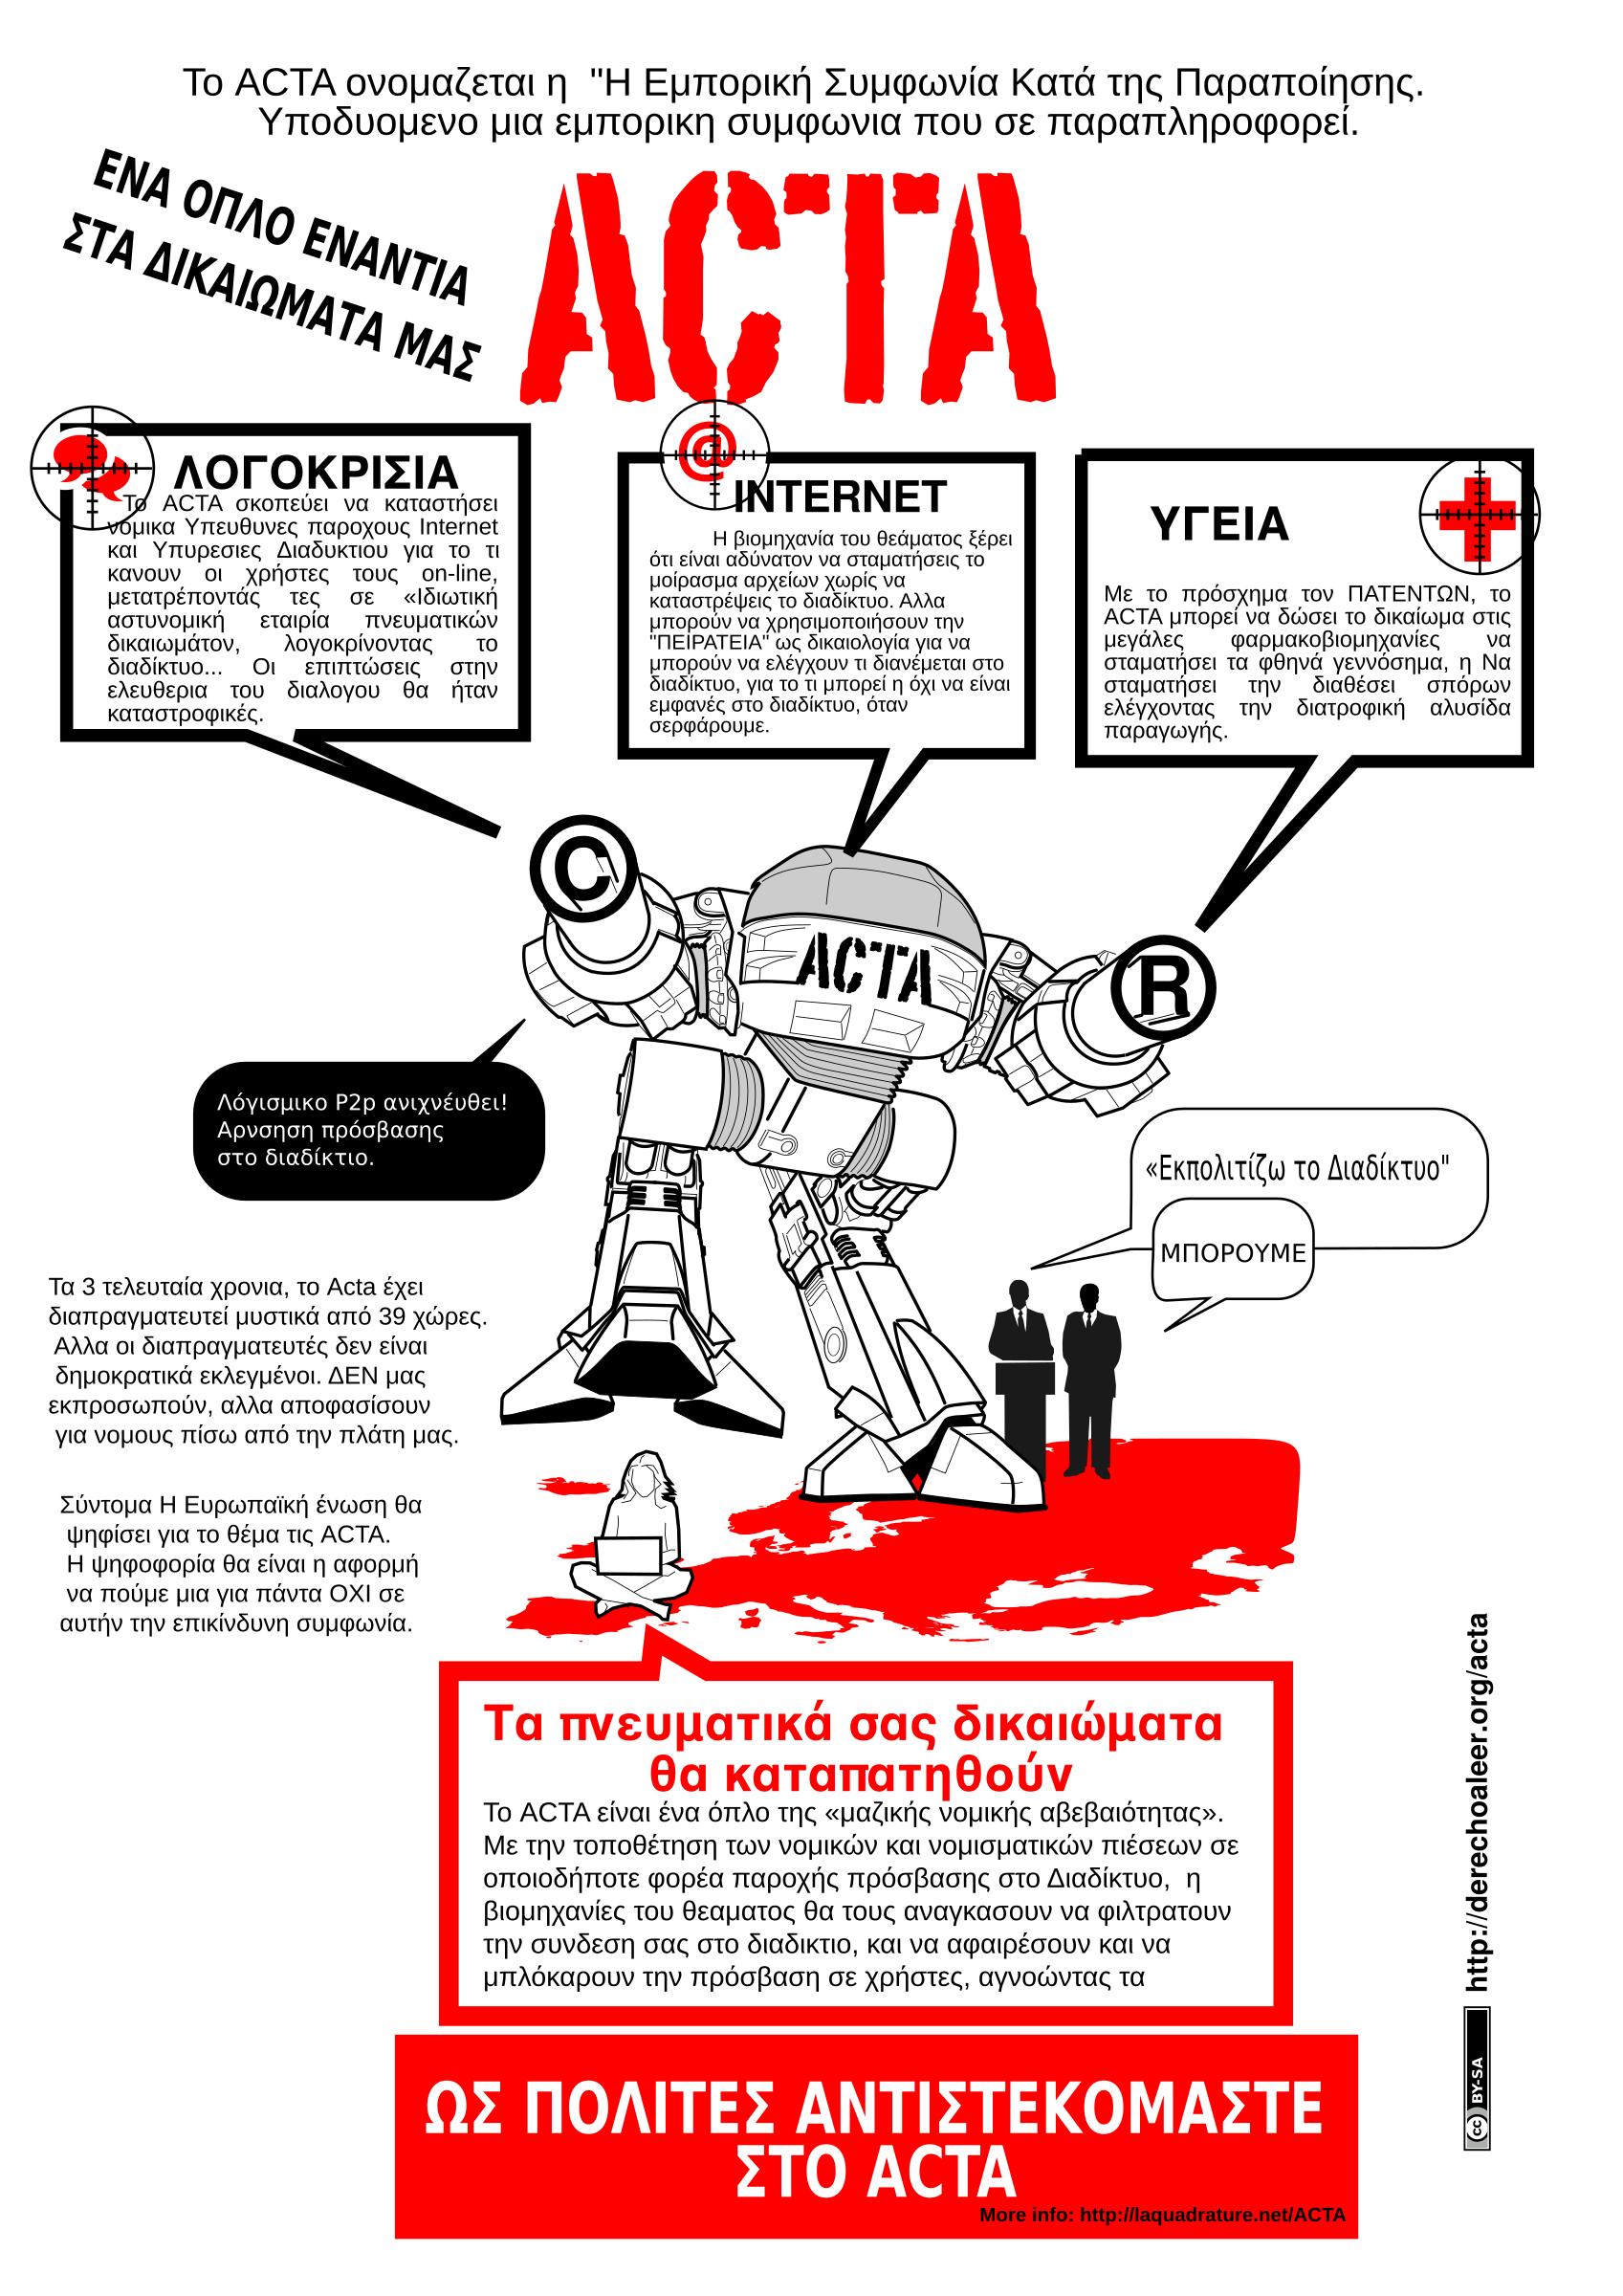 ACTA STOP GREEK png